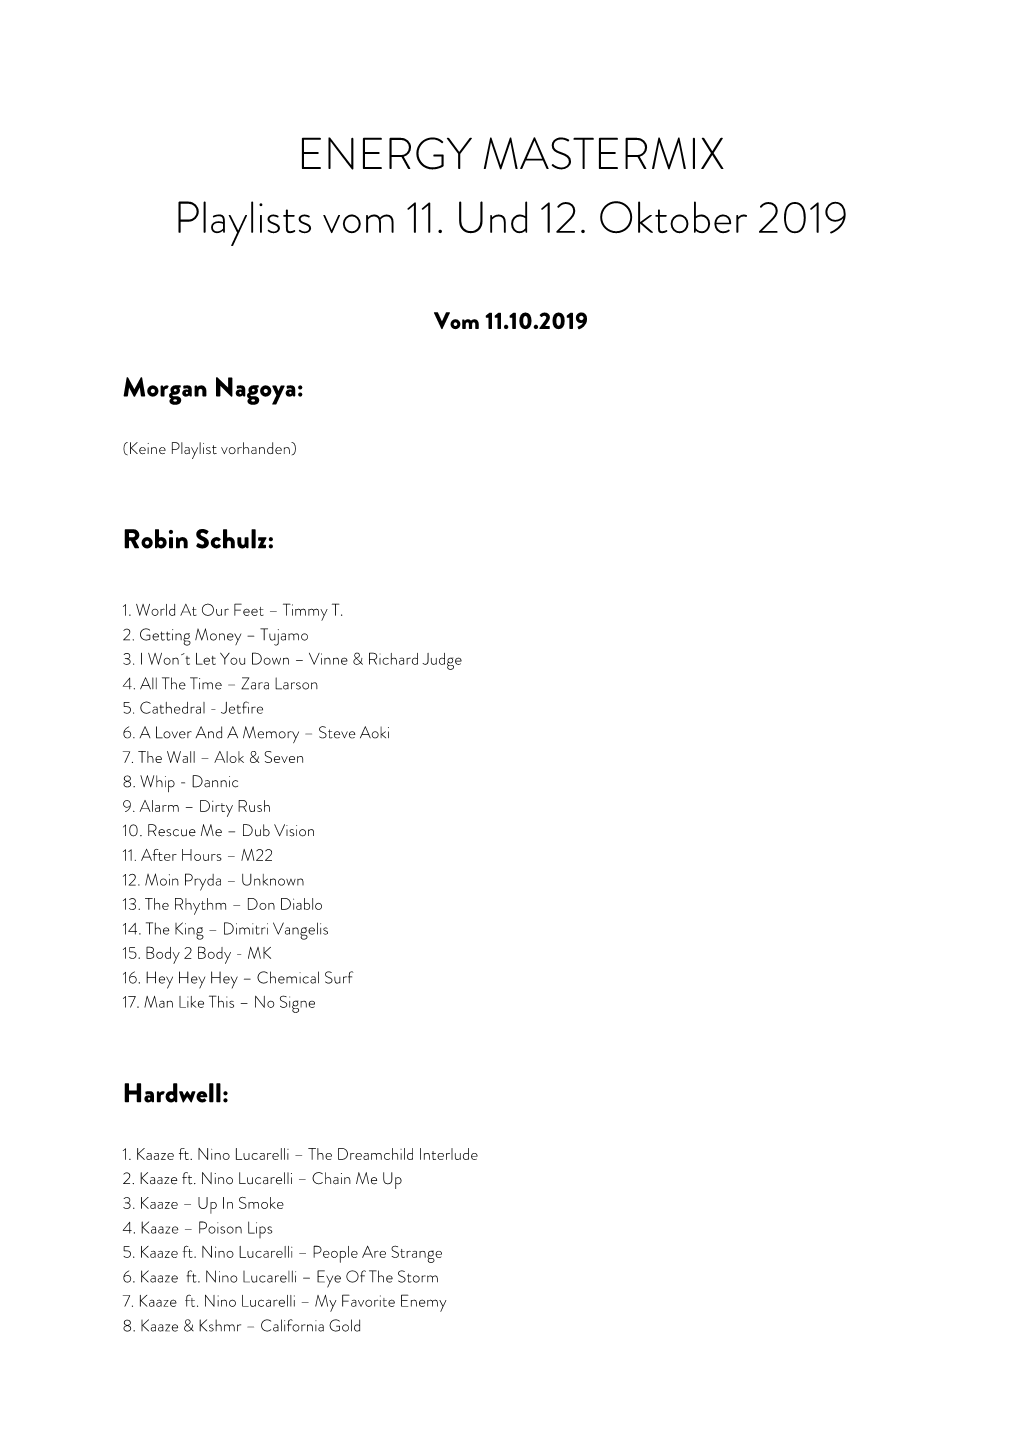 ENERGY MASTERMIX Playlists Vom 11. Und 12. Oktober 2019